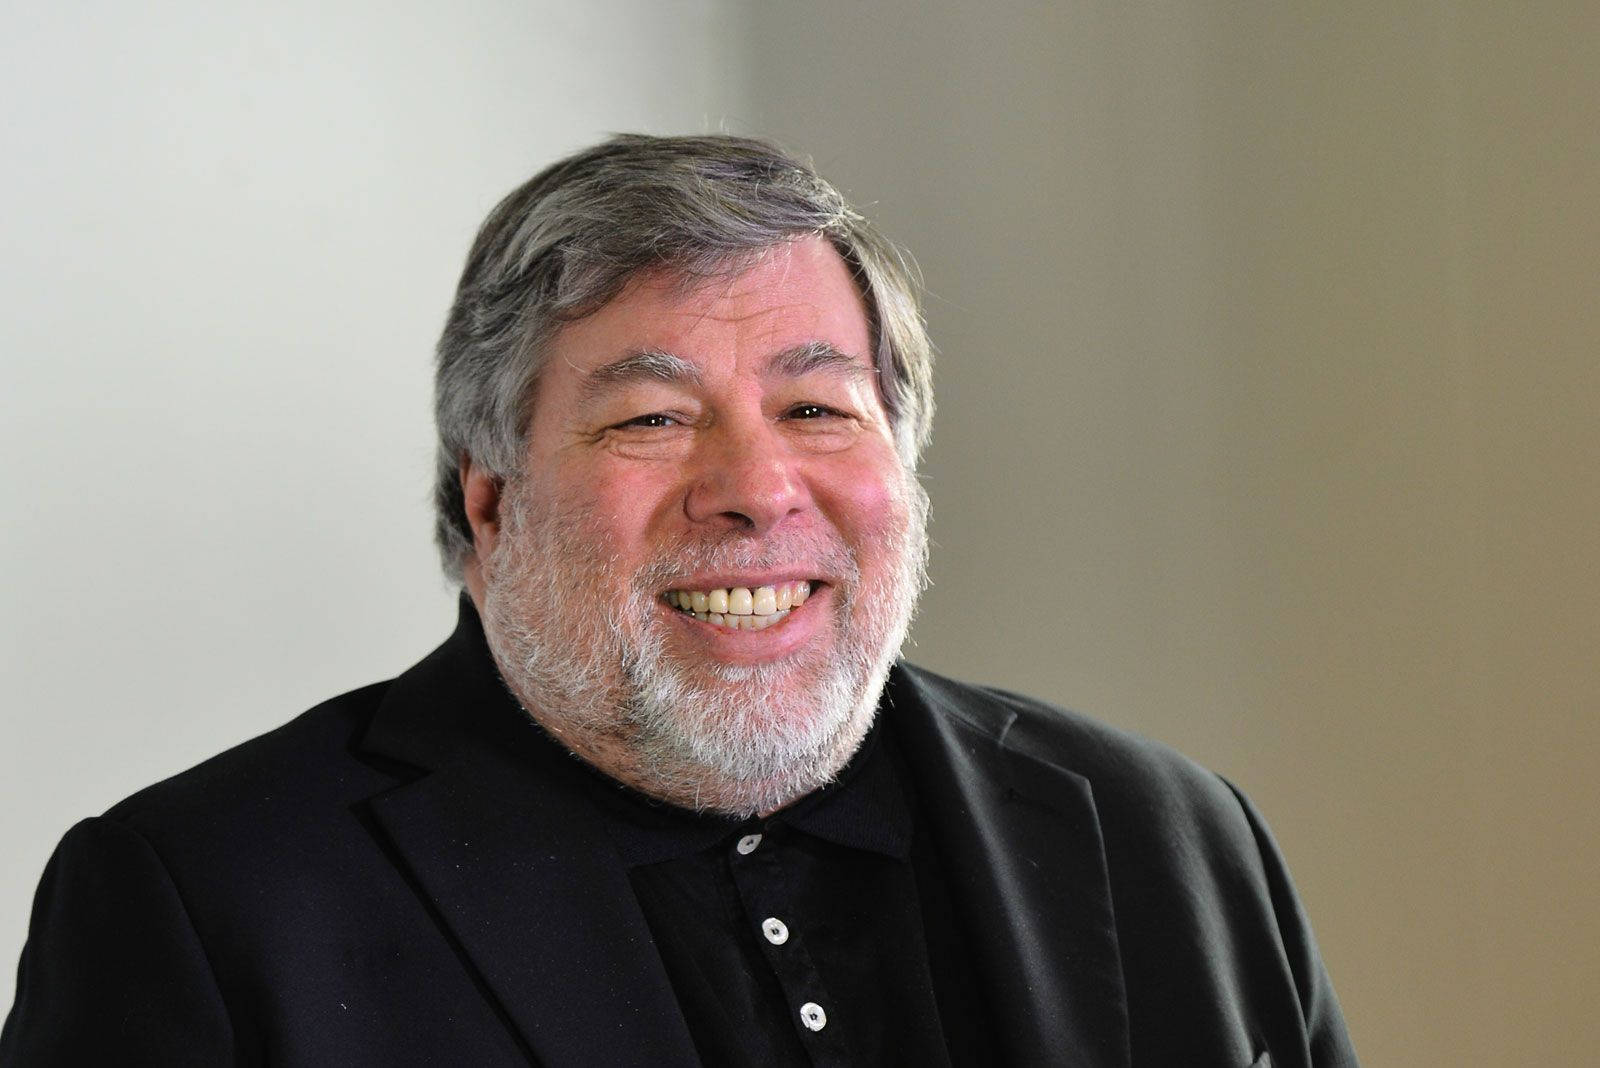 Steve Wozniak 1600 X 1068 Wallpaper